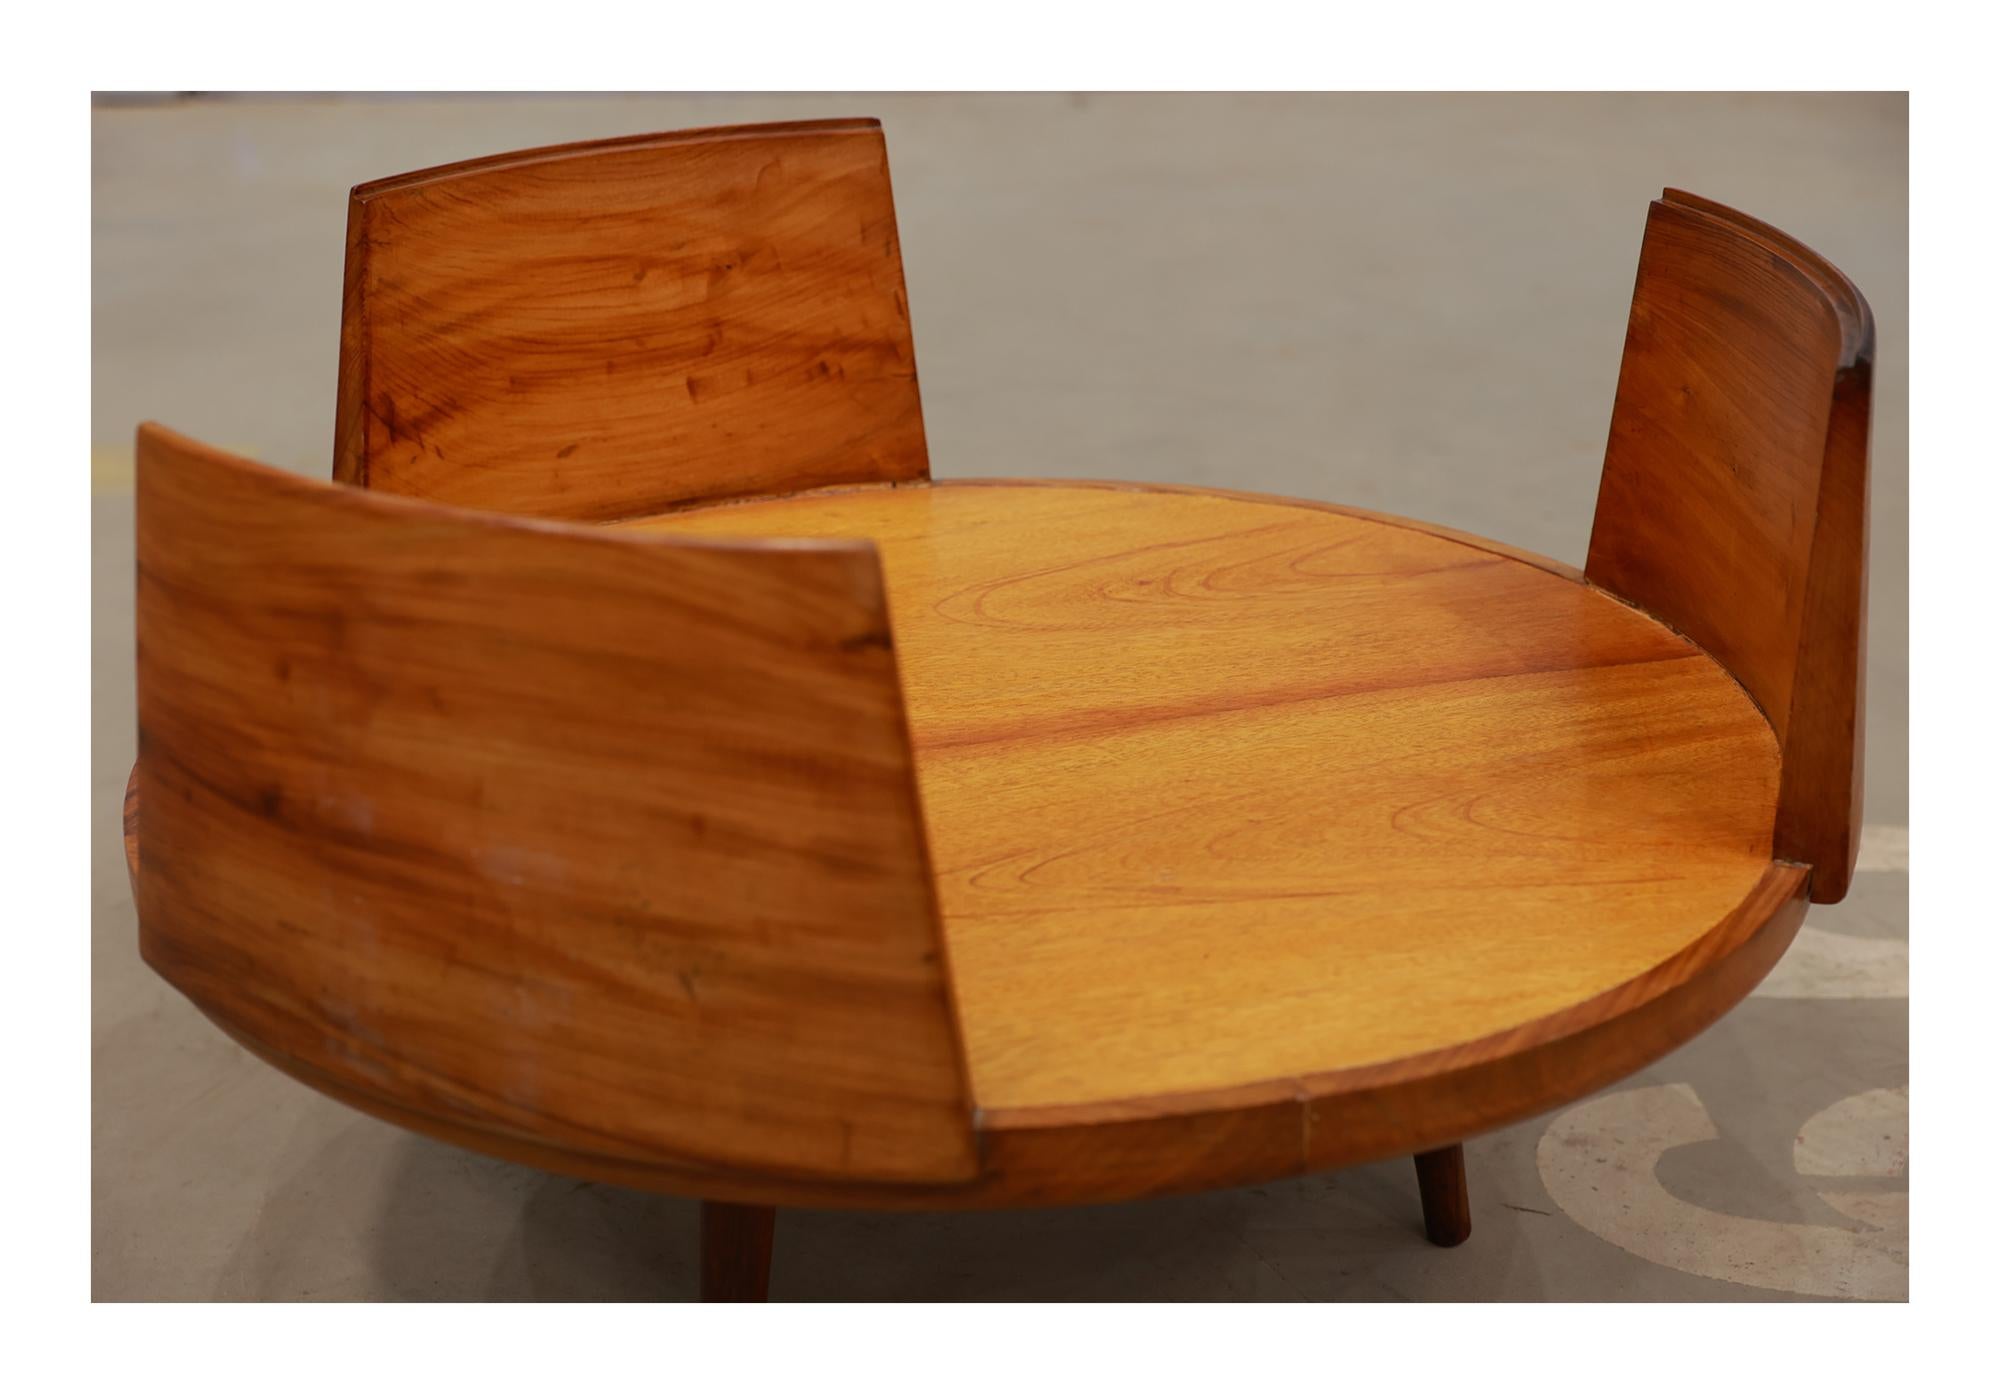 Brazilian Midcentury Modern Coffee Table in Hardwood, Carlo Hauner & Martin Eisler, Brazil